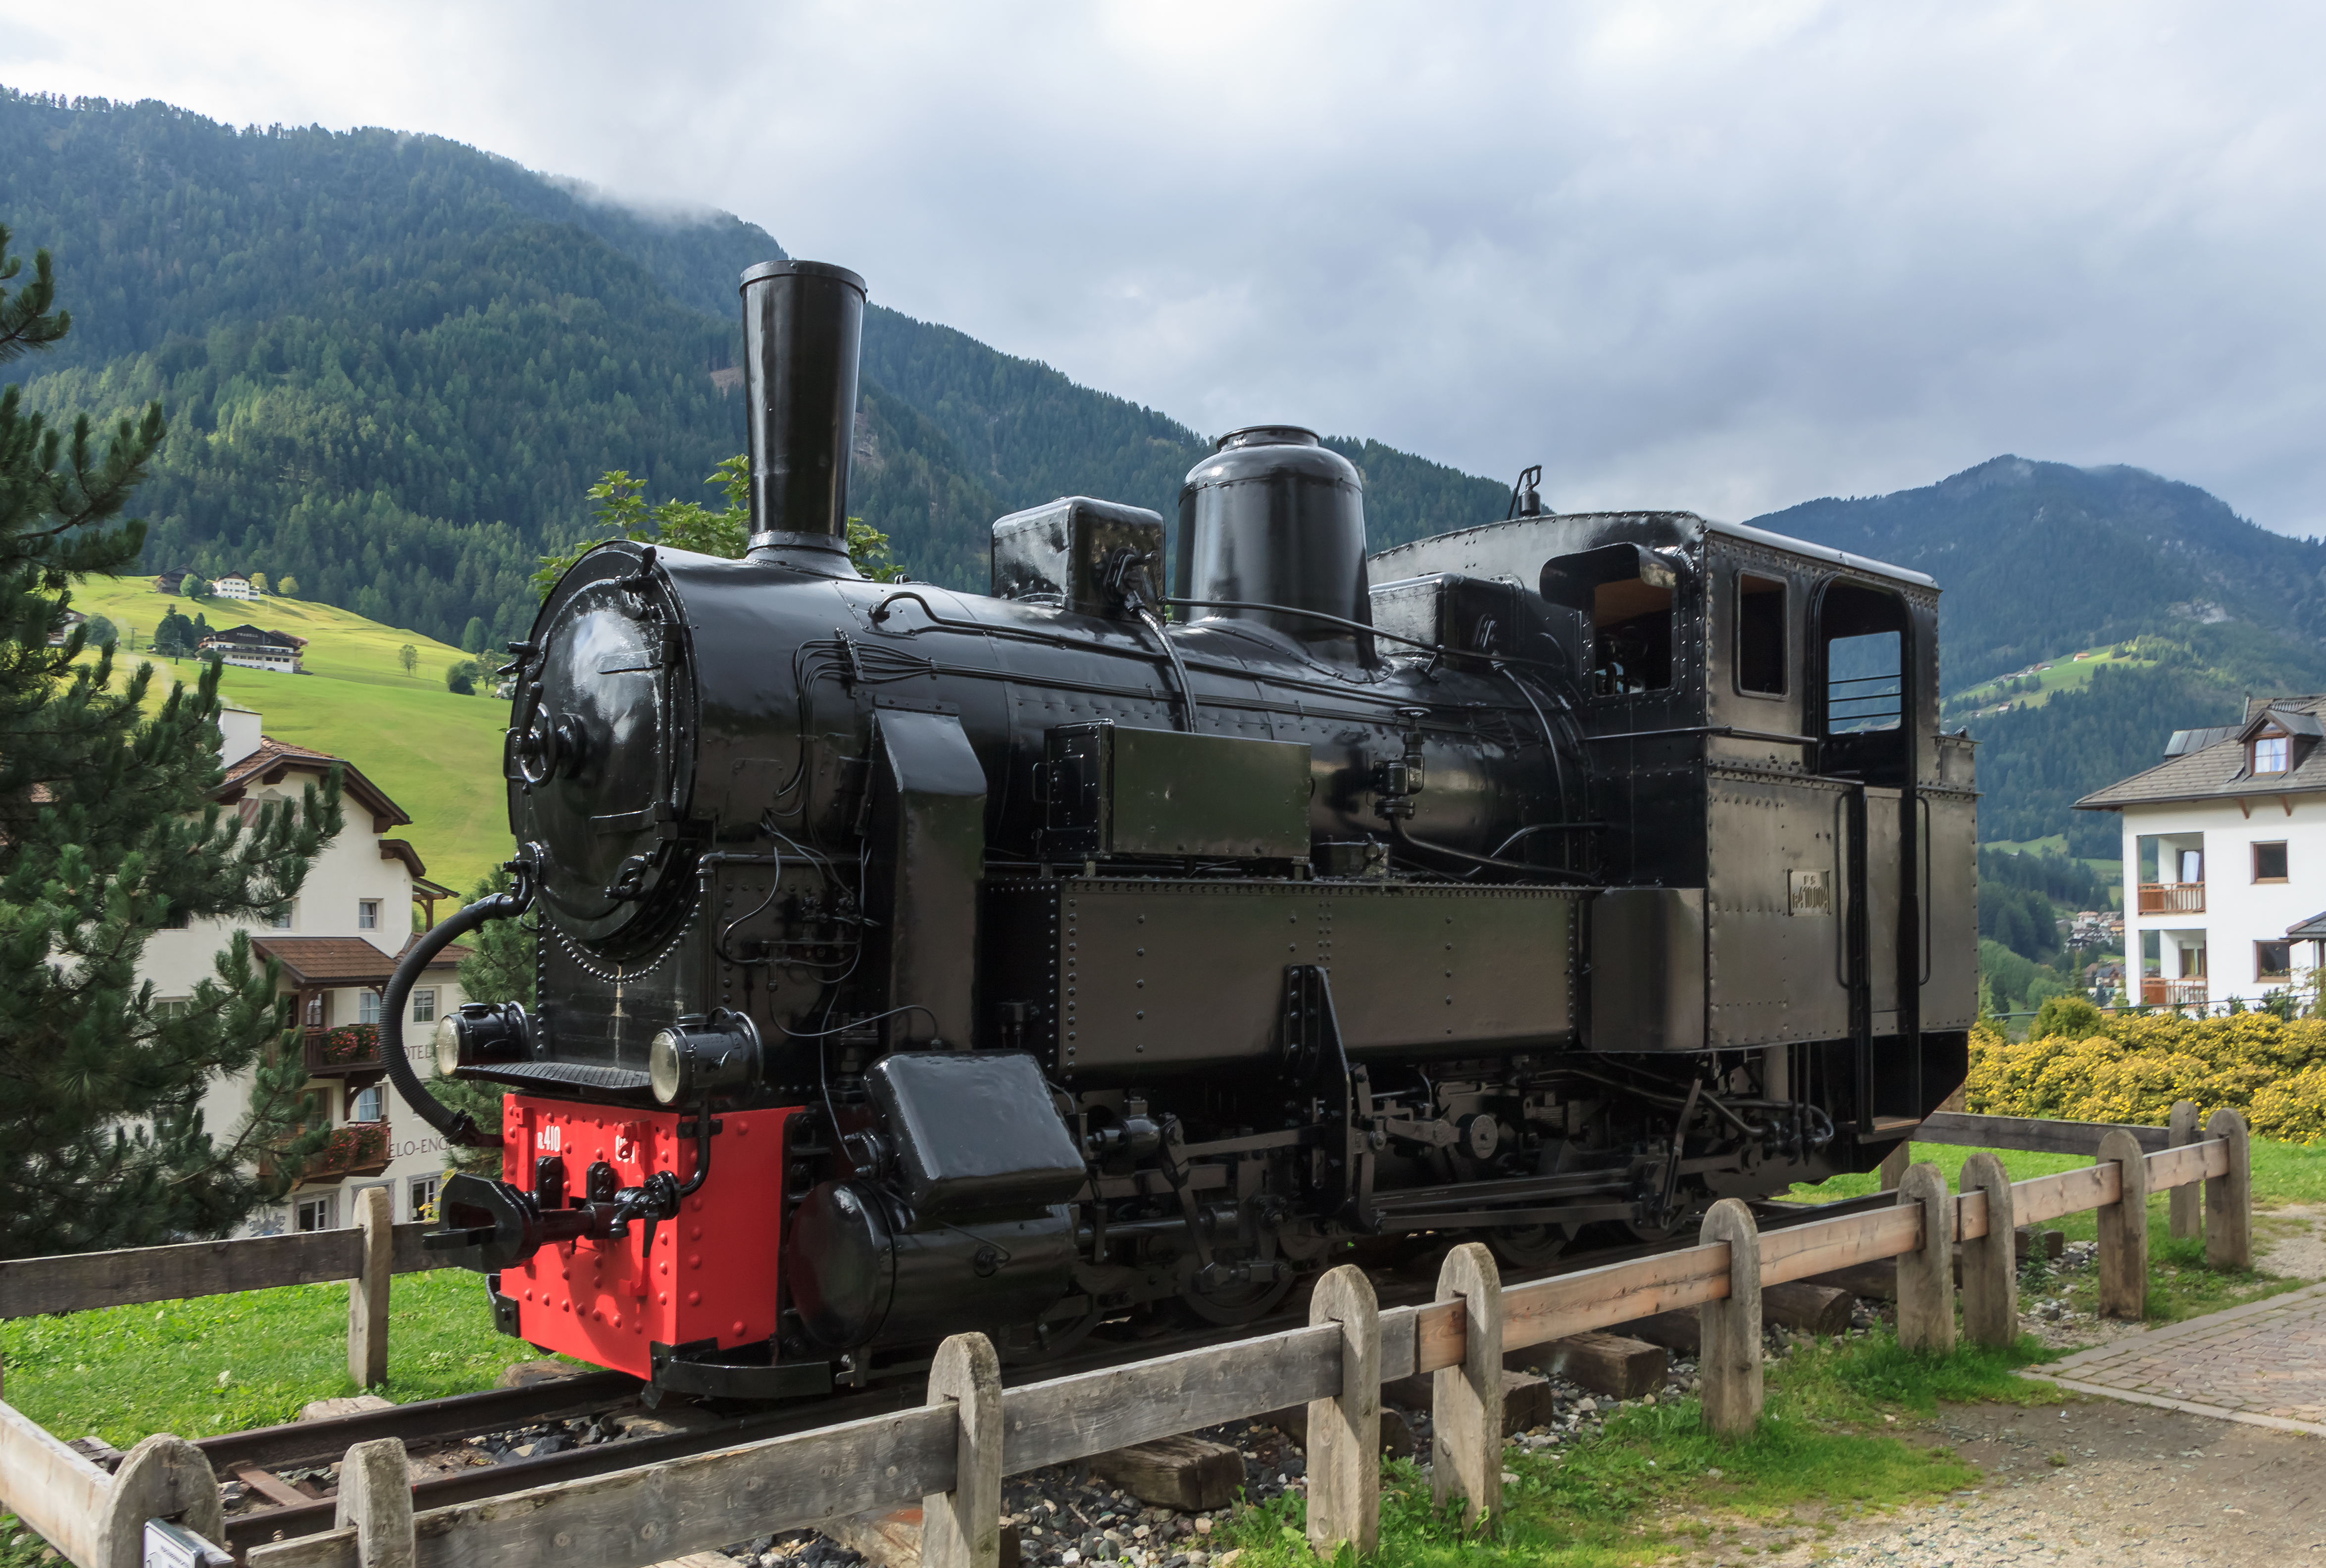 FS R.410.004 - Val Gardena railway 01